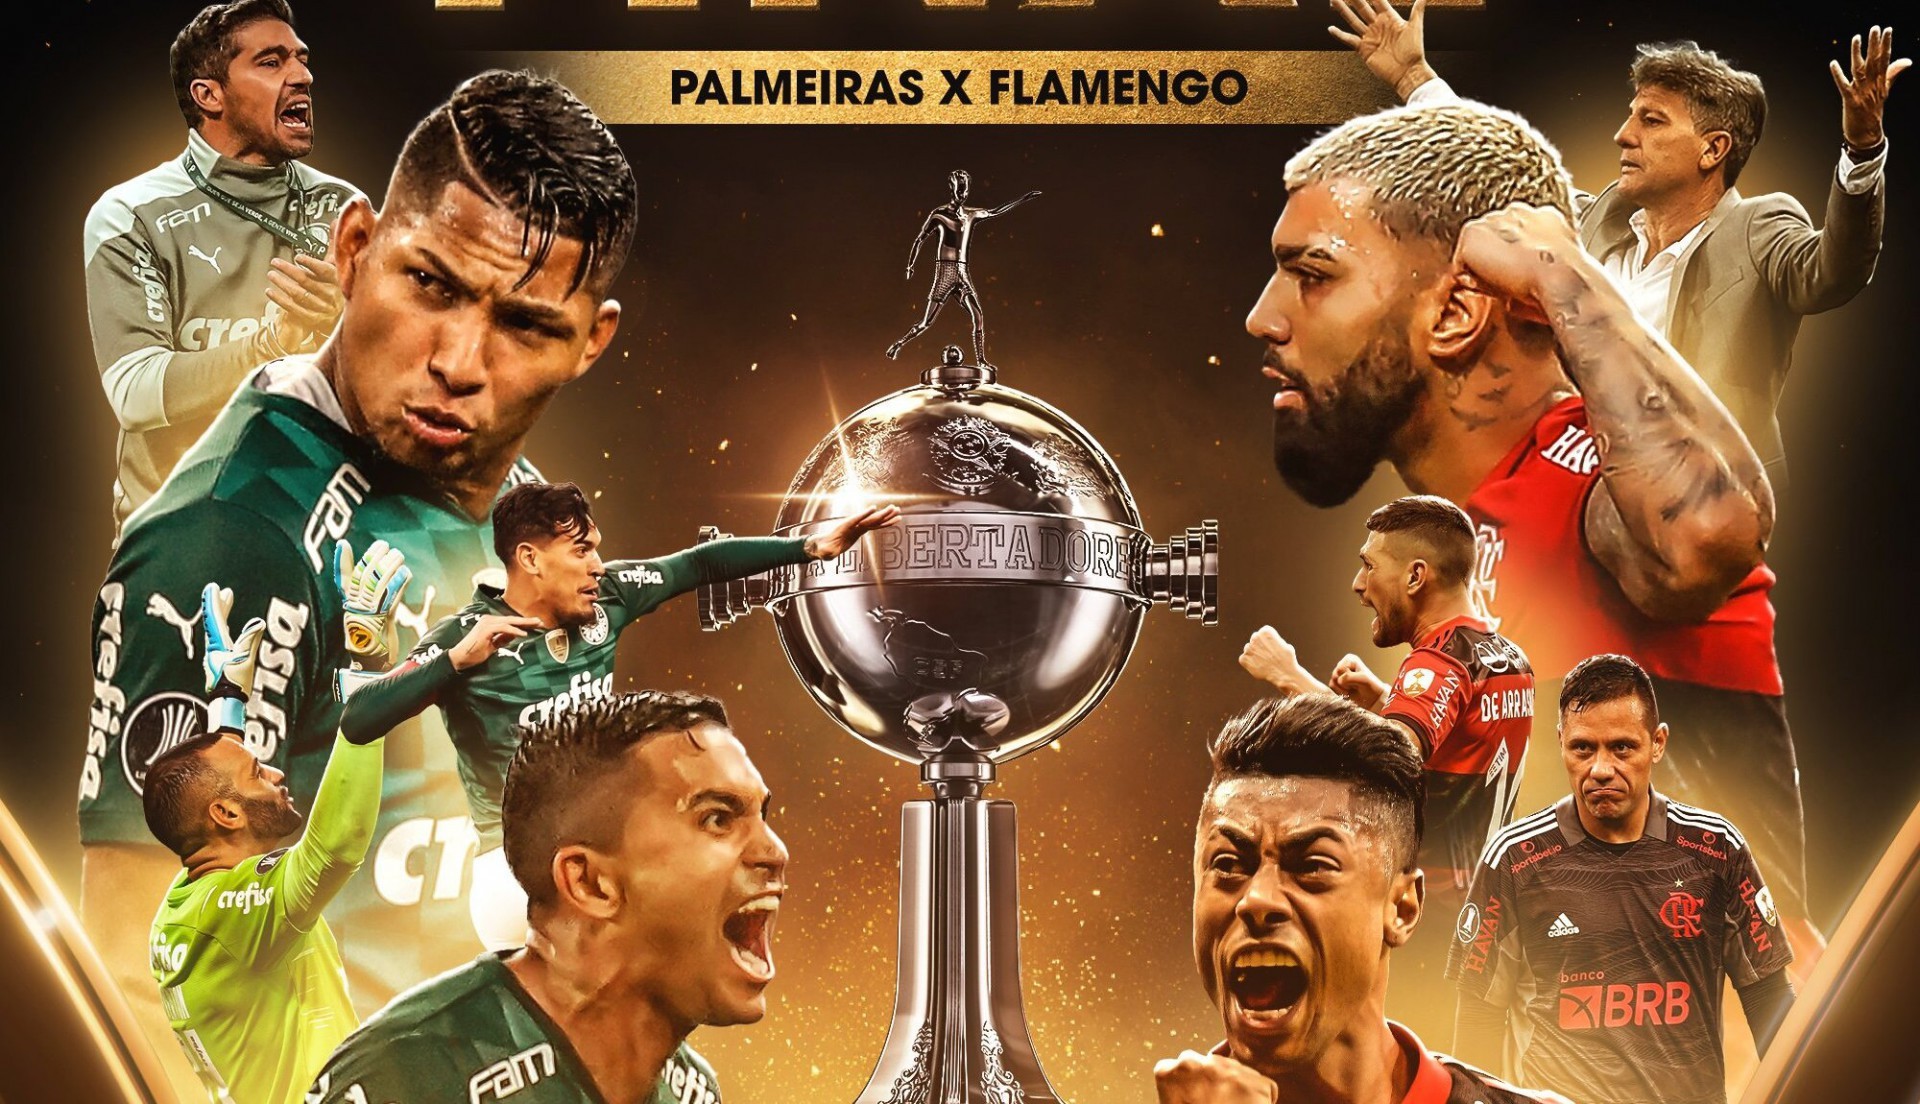 Uruguay - 11/27/2021 - LIBERTADORES 2021 FINAL, PALMEIRAS X FLAMENGO - Fans  during the match between Palmeiras